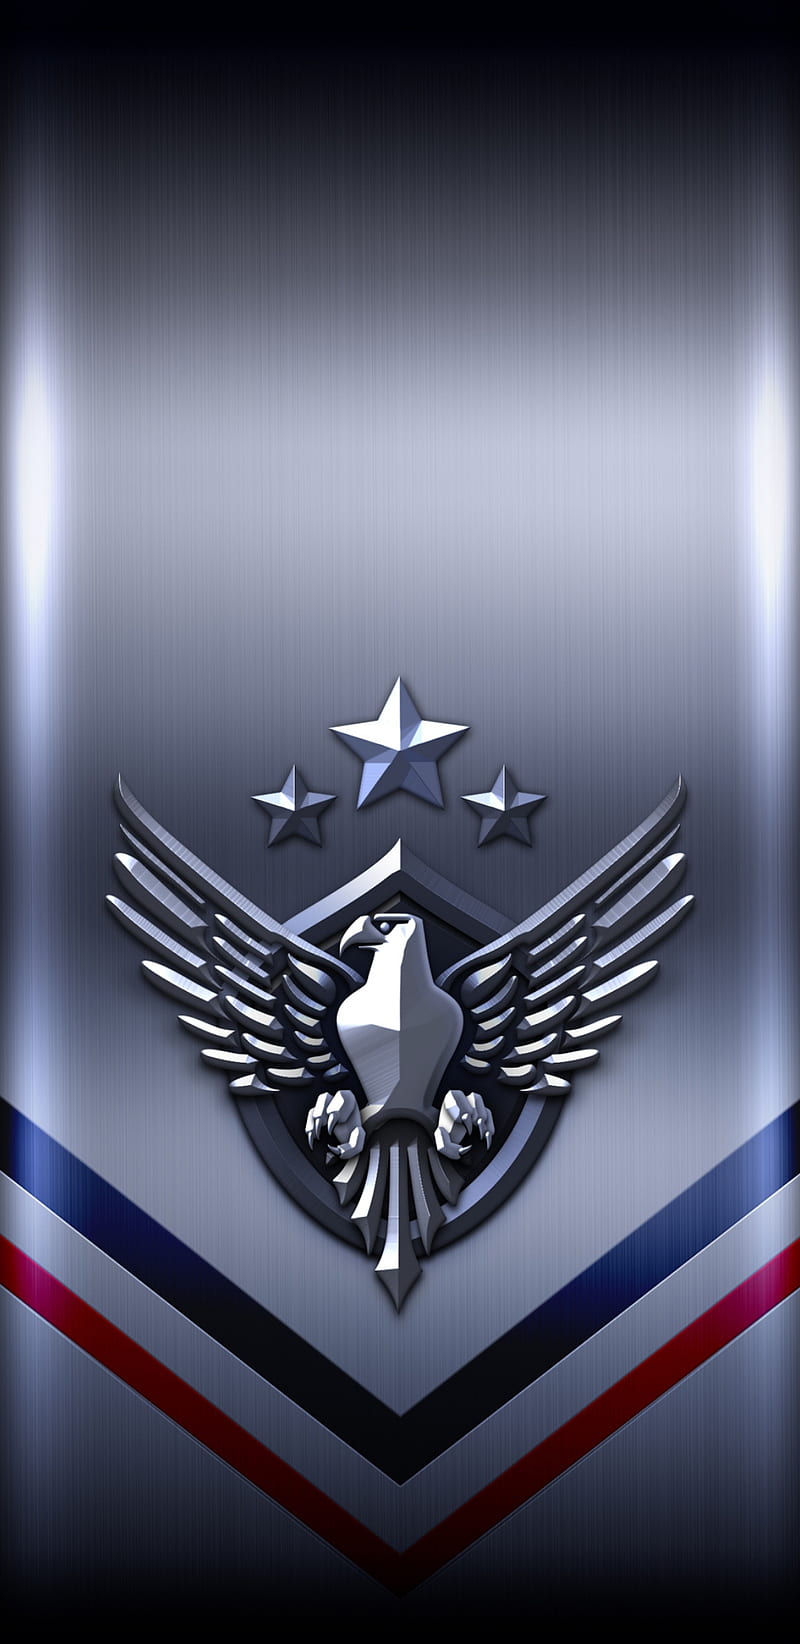 Download Air Force Badge Satyamev Jayate Wallpaper | Wallpapers.com